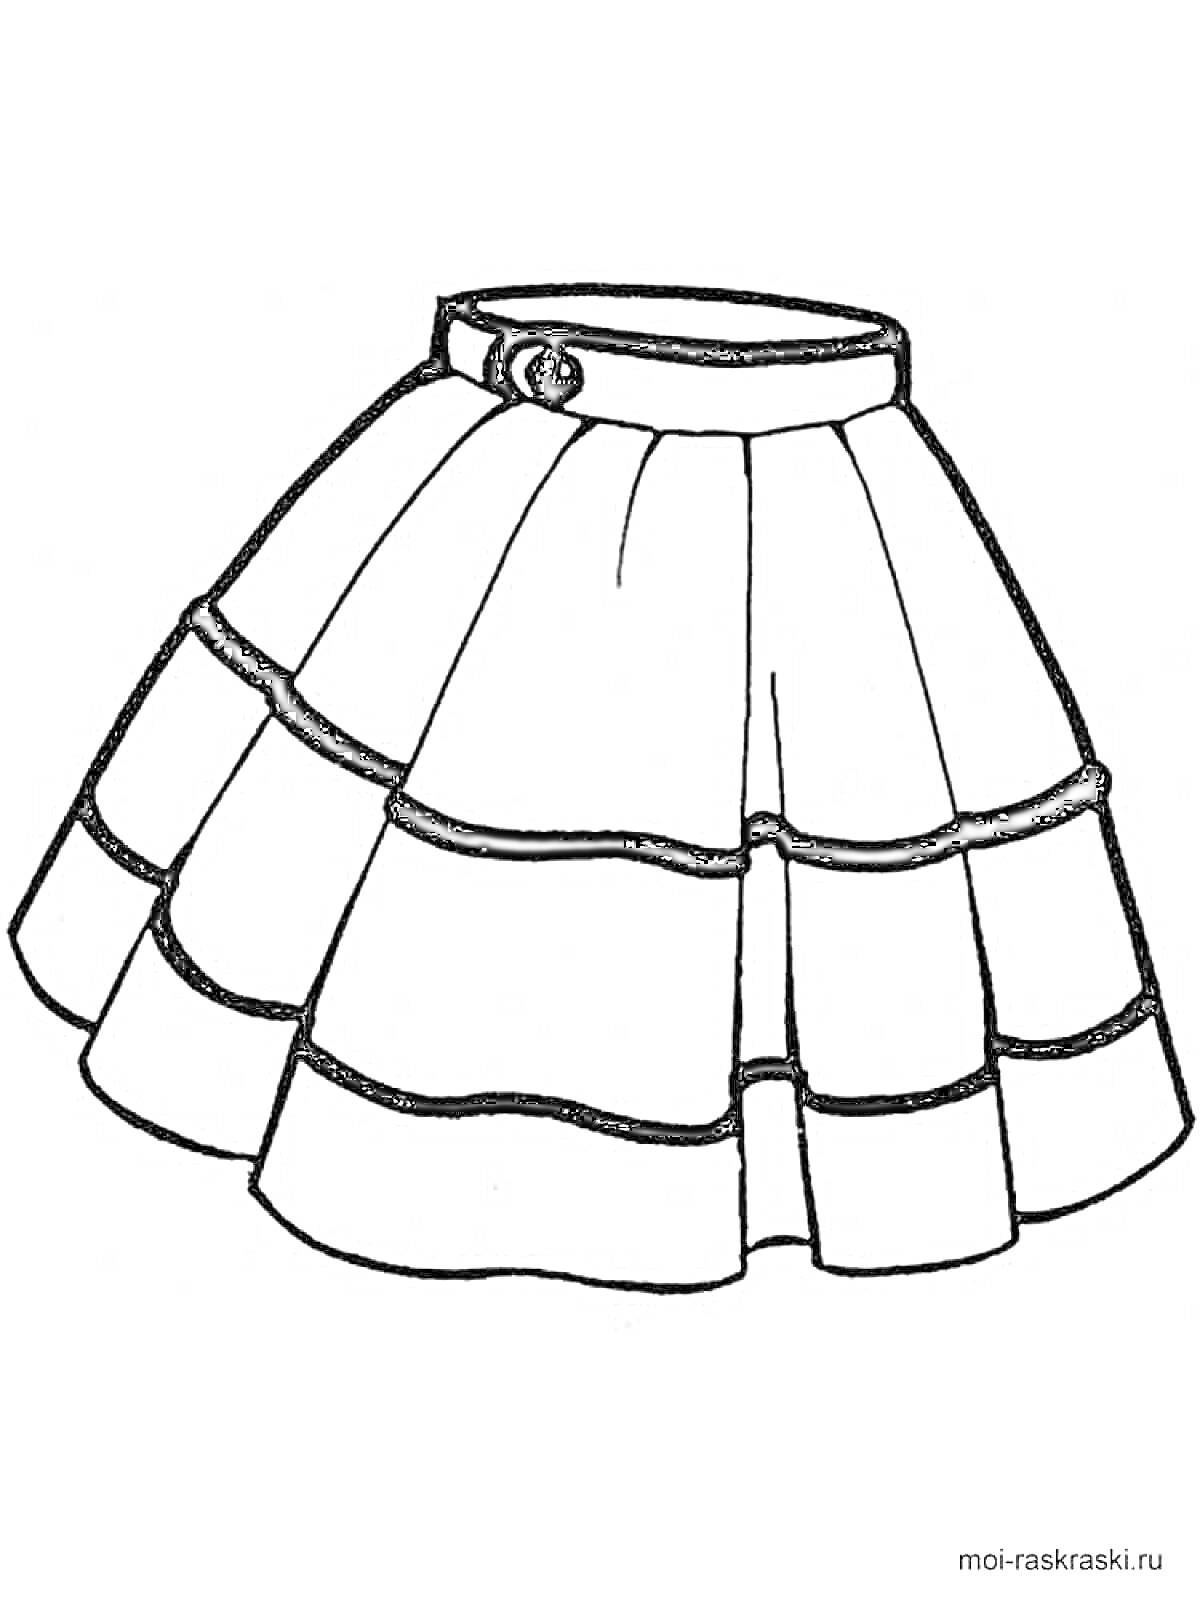 Раскраска Юбка с пуговицей, юбка с многослойными рюшами